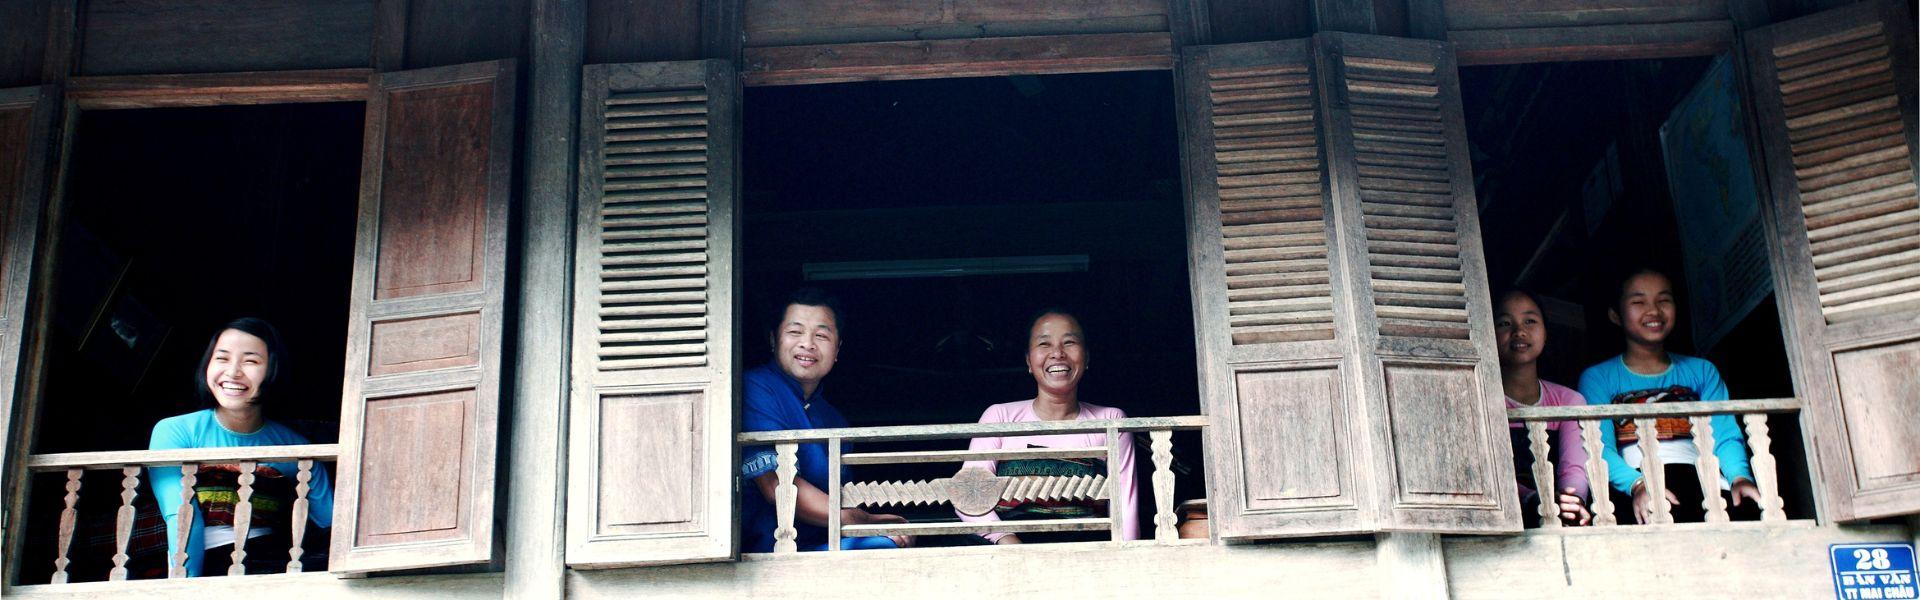 Mai Chau Vietnam : Infos pratiques avant de partir en voyage